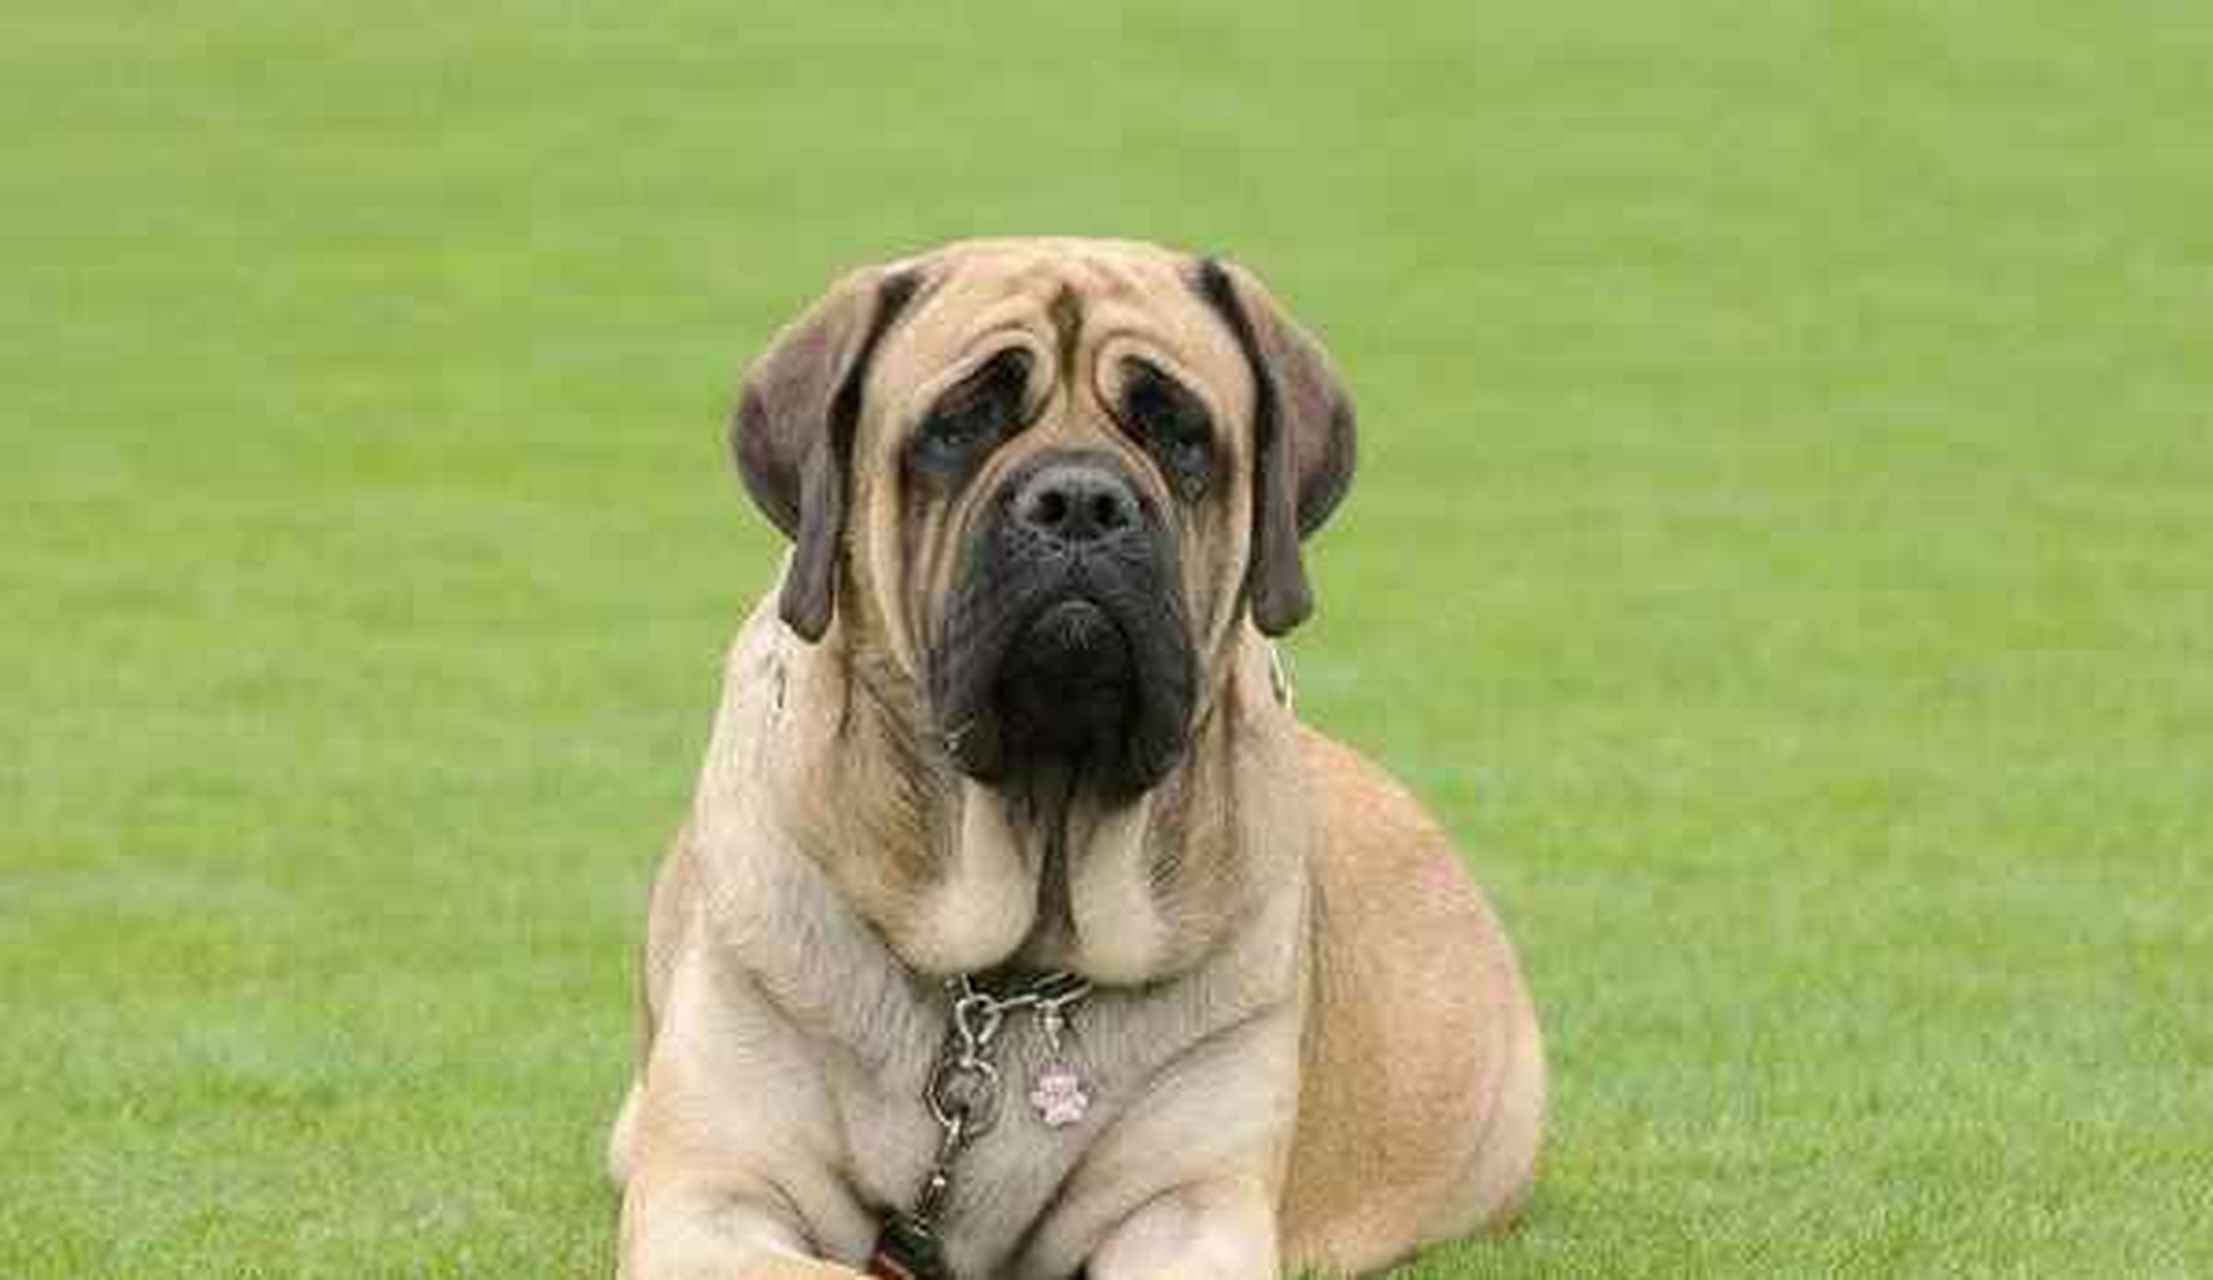 英国獒:英国獒体型非常巨大,一只爪子有足球一般大,号称是英国的国犬